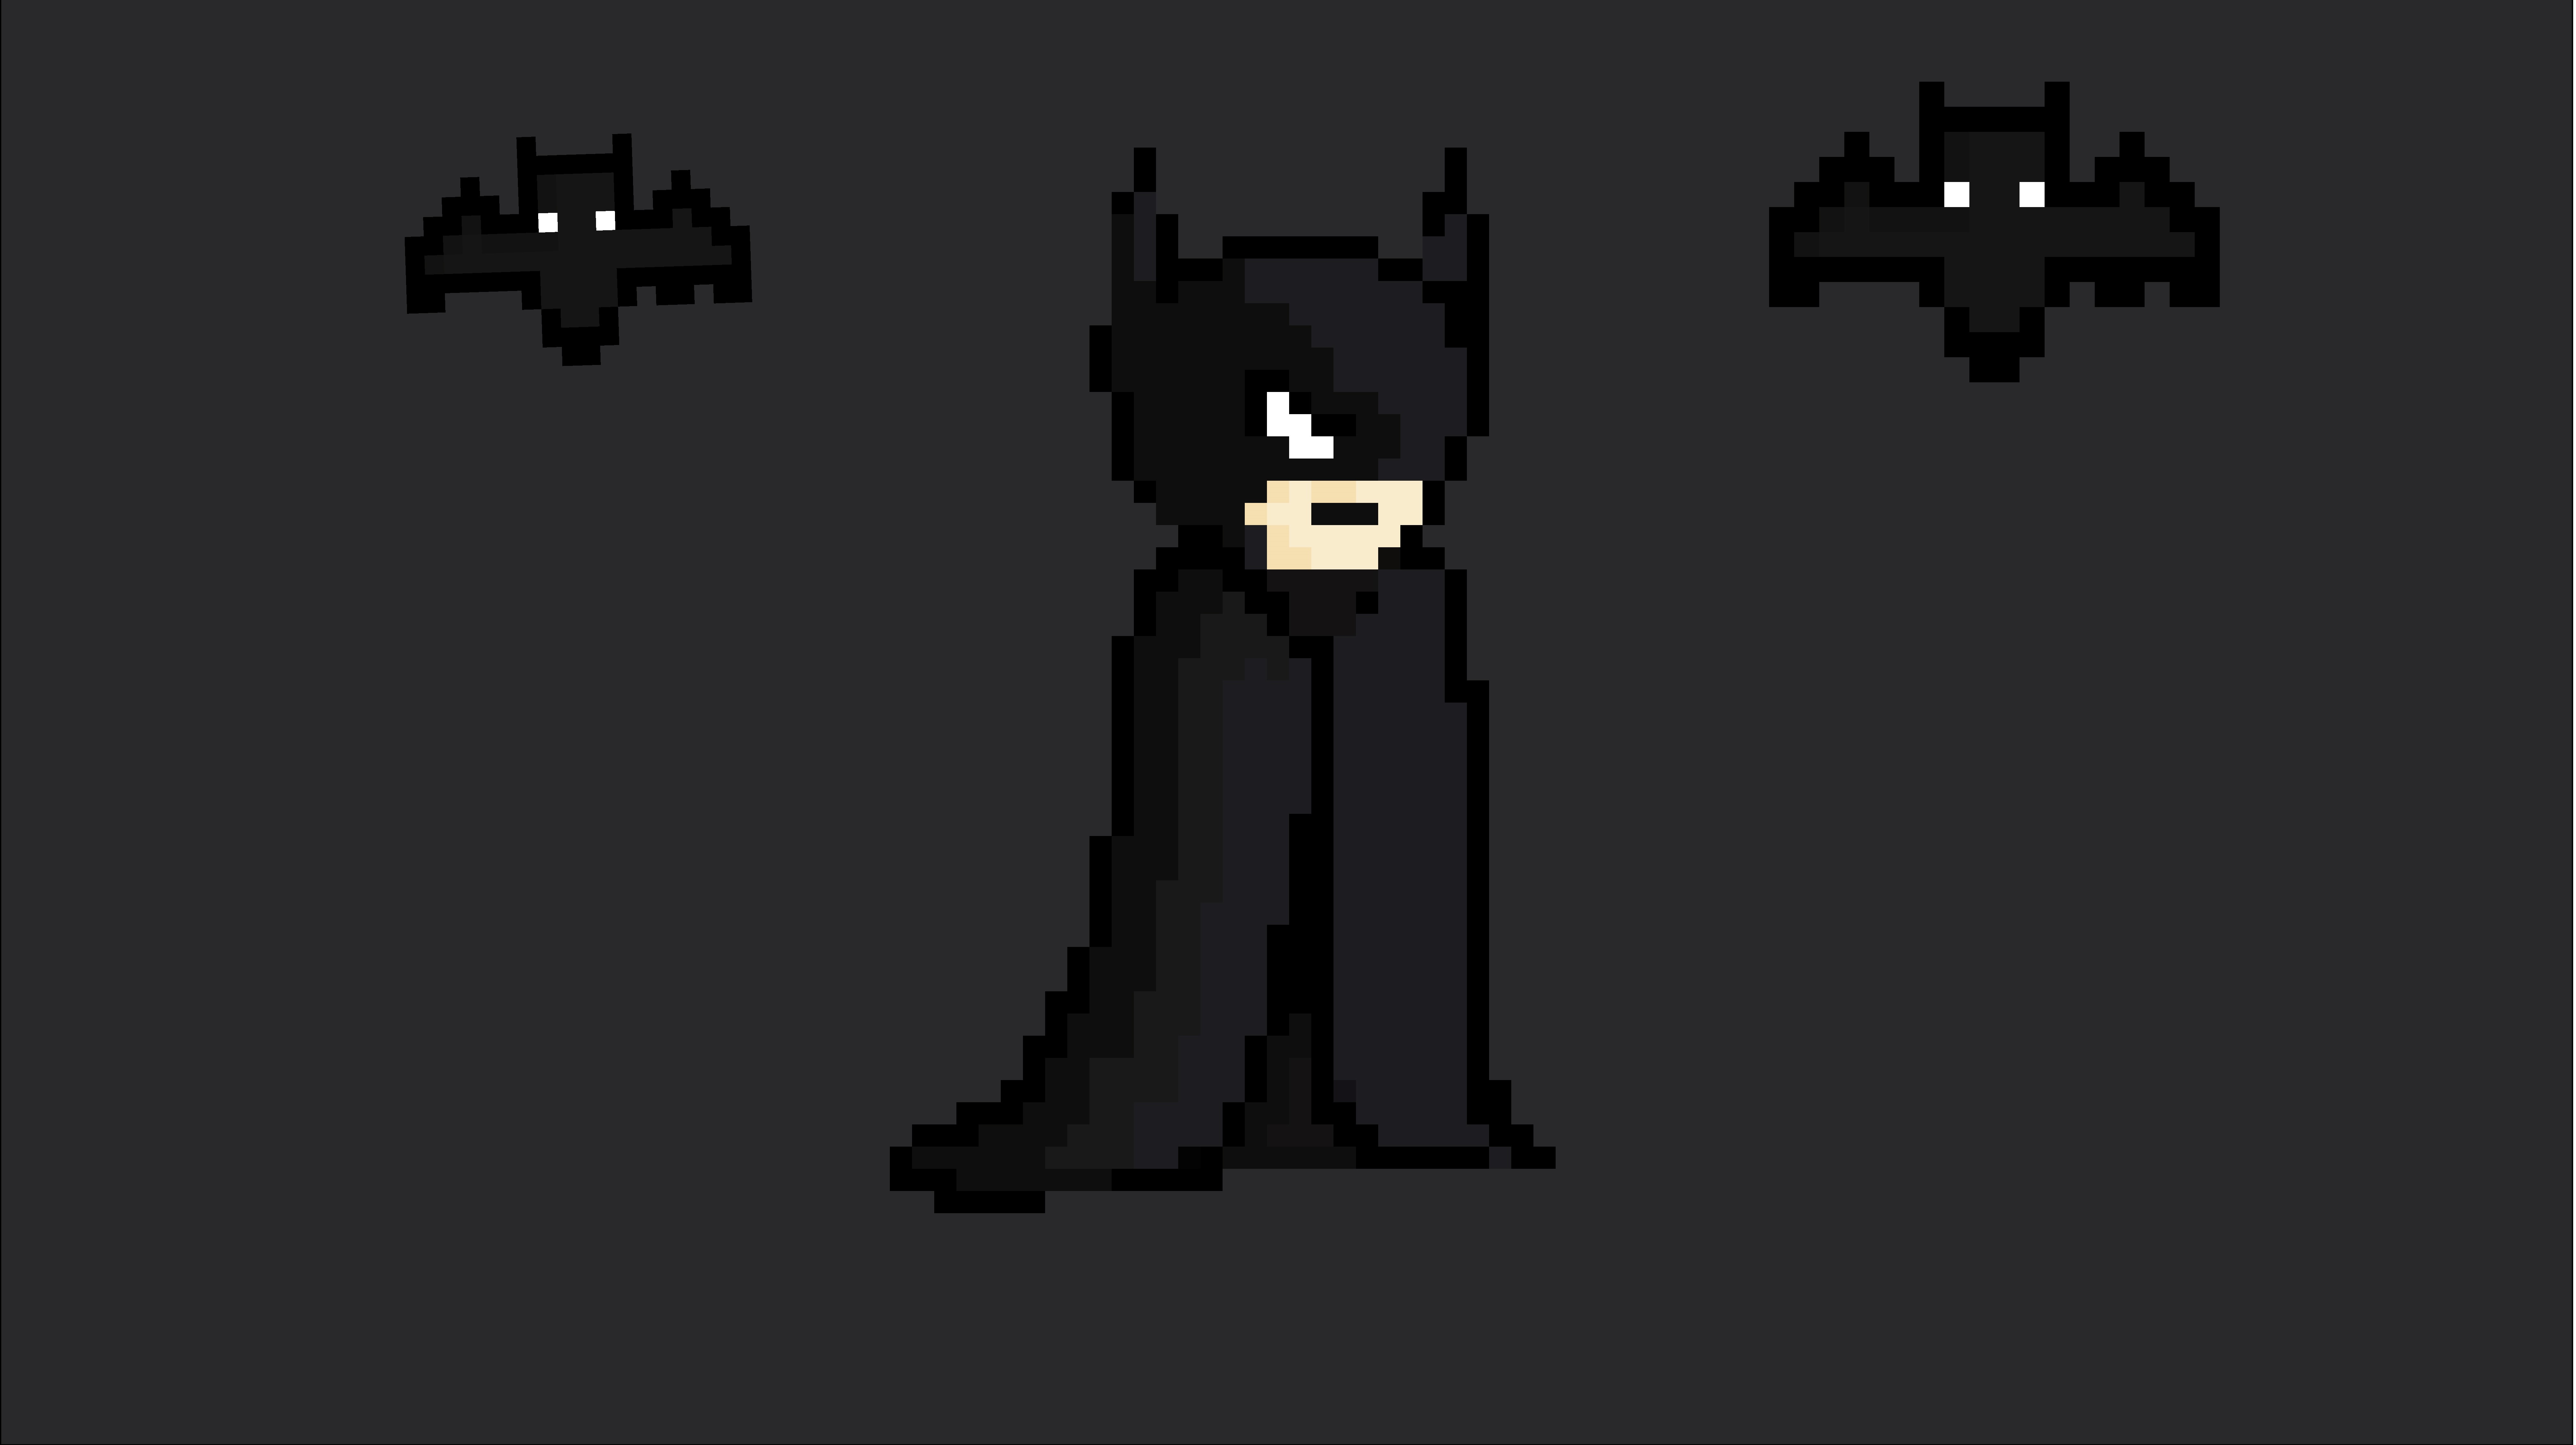 The Batman Pixel Art